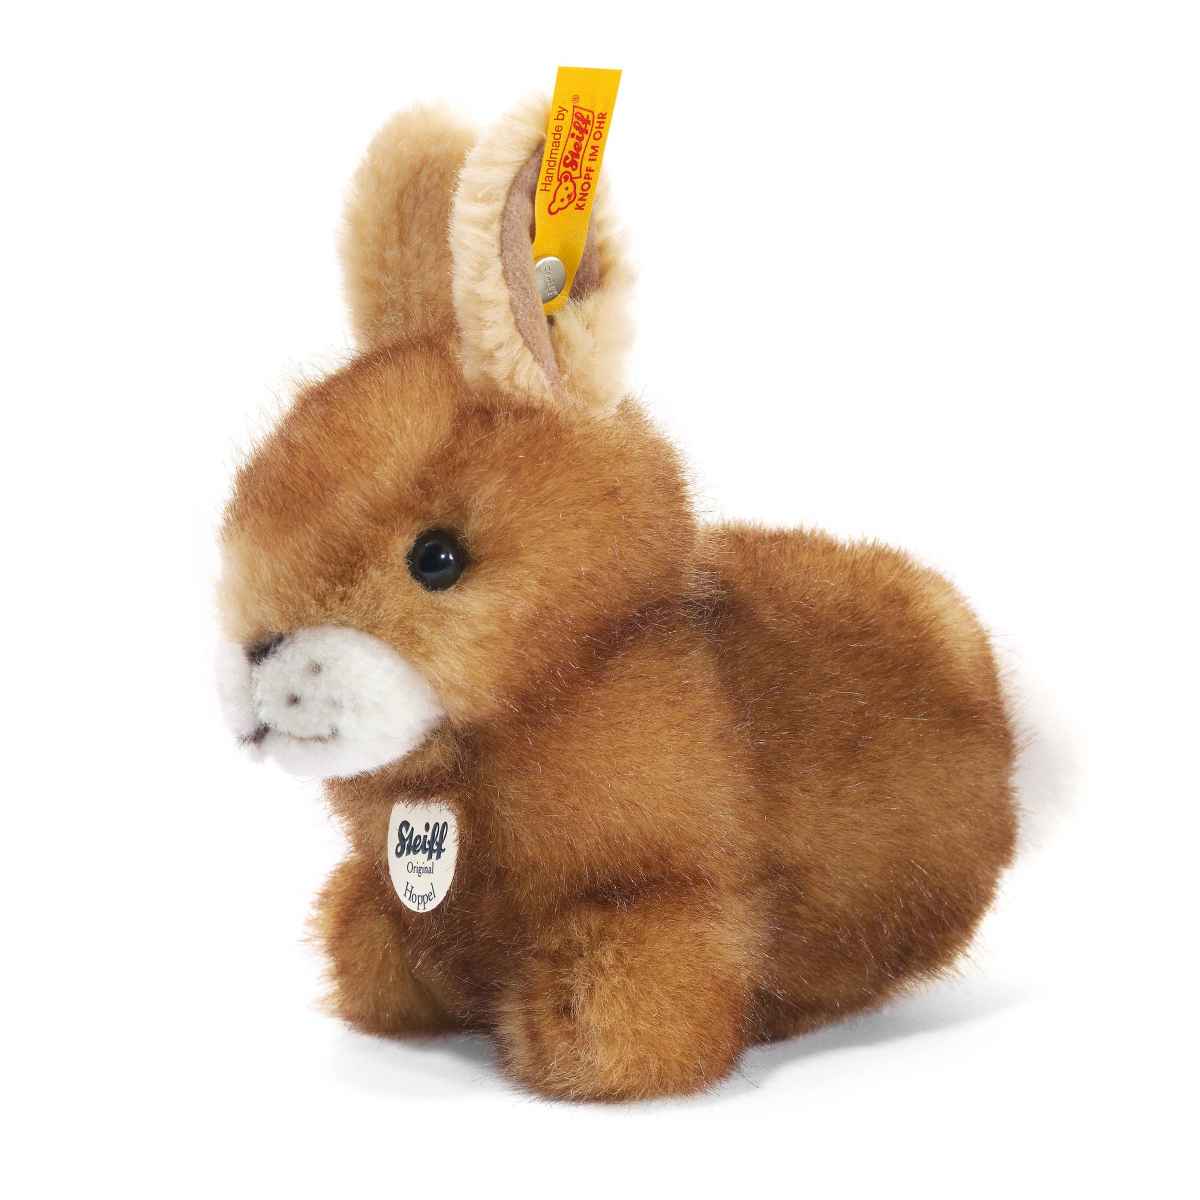 Мягкая игрушка Steiff Hoppel Rabbit Штайф Кролик Хоппель коричневый 14 см мягкая игрушка jackie chinoсo jc 12992 r коричневый кролик 22 см